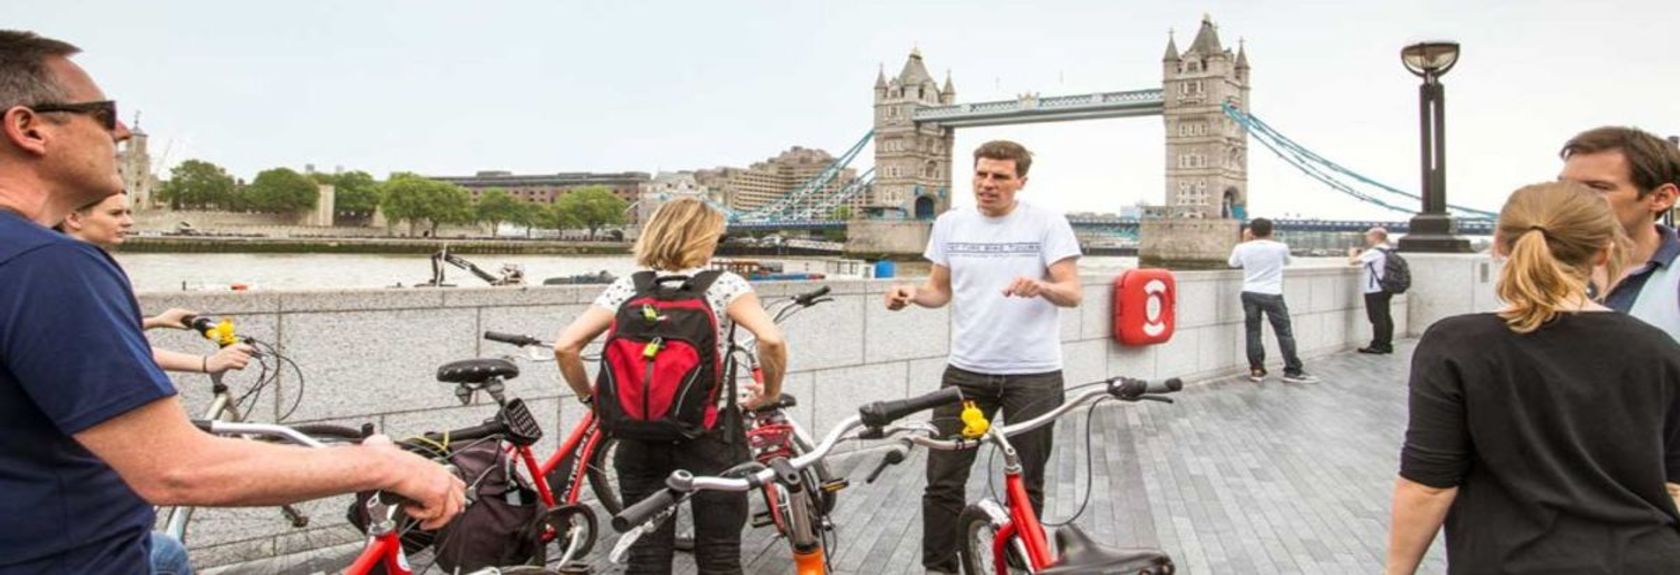 Você gostaria de descobrir Londres de uma maneira diferente? Então pegue a bicicleta! Londres é a cidade ideal para descobrir de bicicleta e, graças à orientação que você receberá durante os passeios especiais de bicicleta por Londres, você realmente conhecerá sua cidade.Você também poderá ver lugares que só são conhecidos pelos moradores da cidade. Assim, você pode ter certeza de que não sabe nada sobre a capital inglesa! Regularmente durante os passeios haverá uma pequena parada para uma oportunidade fotográfica ou selfie em locais famosos por sua beleza, para que você possa capturar tudo para a frente de casa ou seu álbum de fotos.​